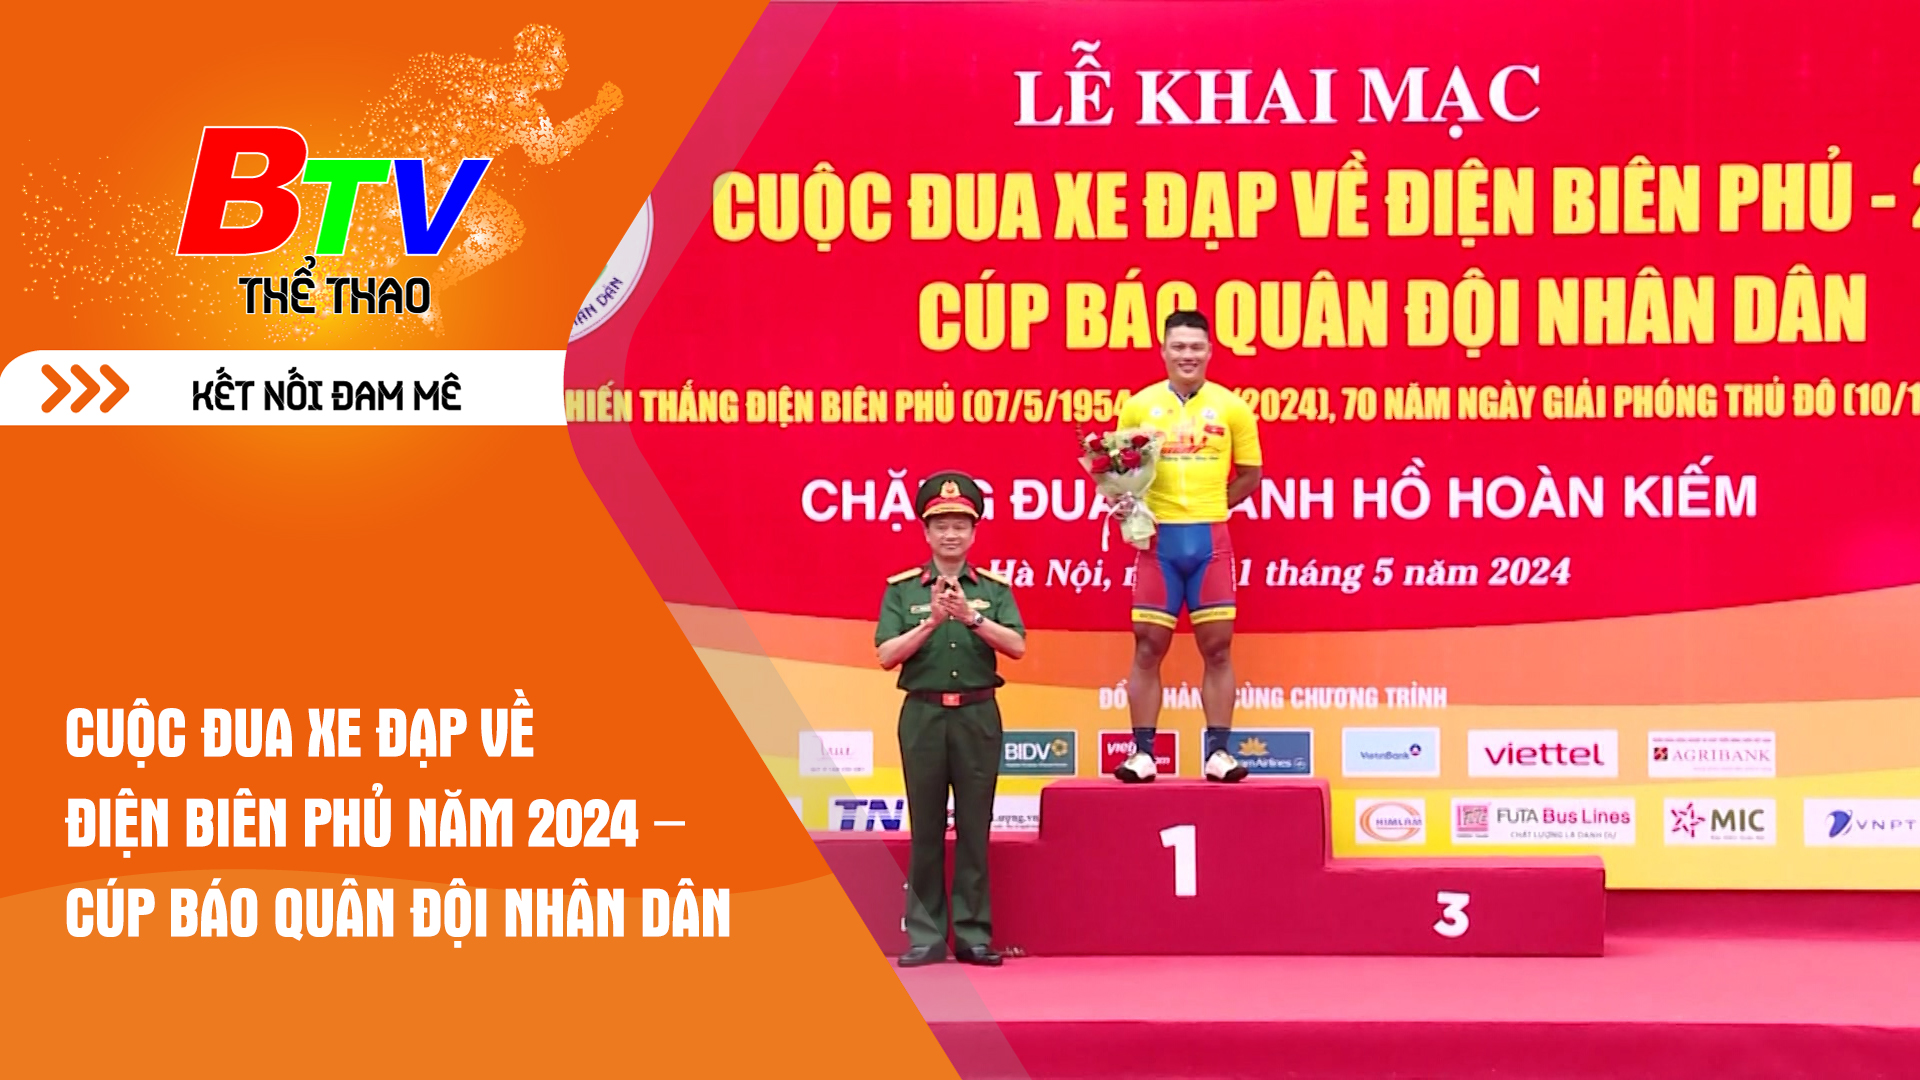 Cuộc đua xe đạp về Điện Biên Phủ năm 2024 – Cúp Báo Quân đội nhân dân | Tin Thể thao 24h	